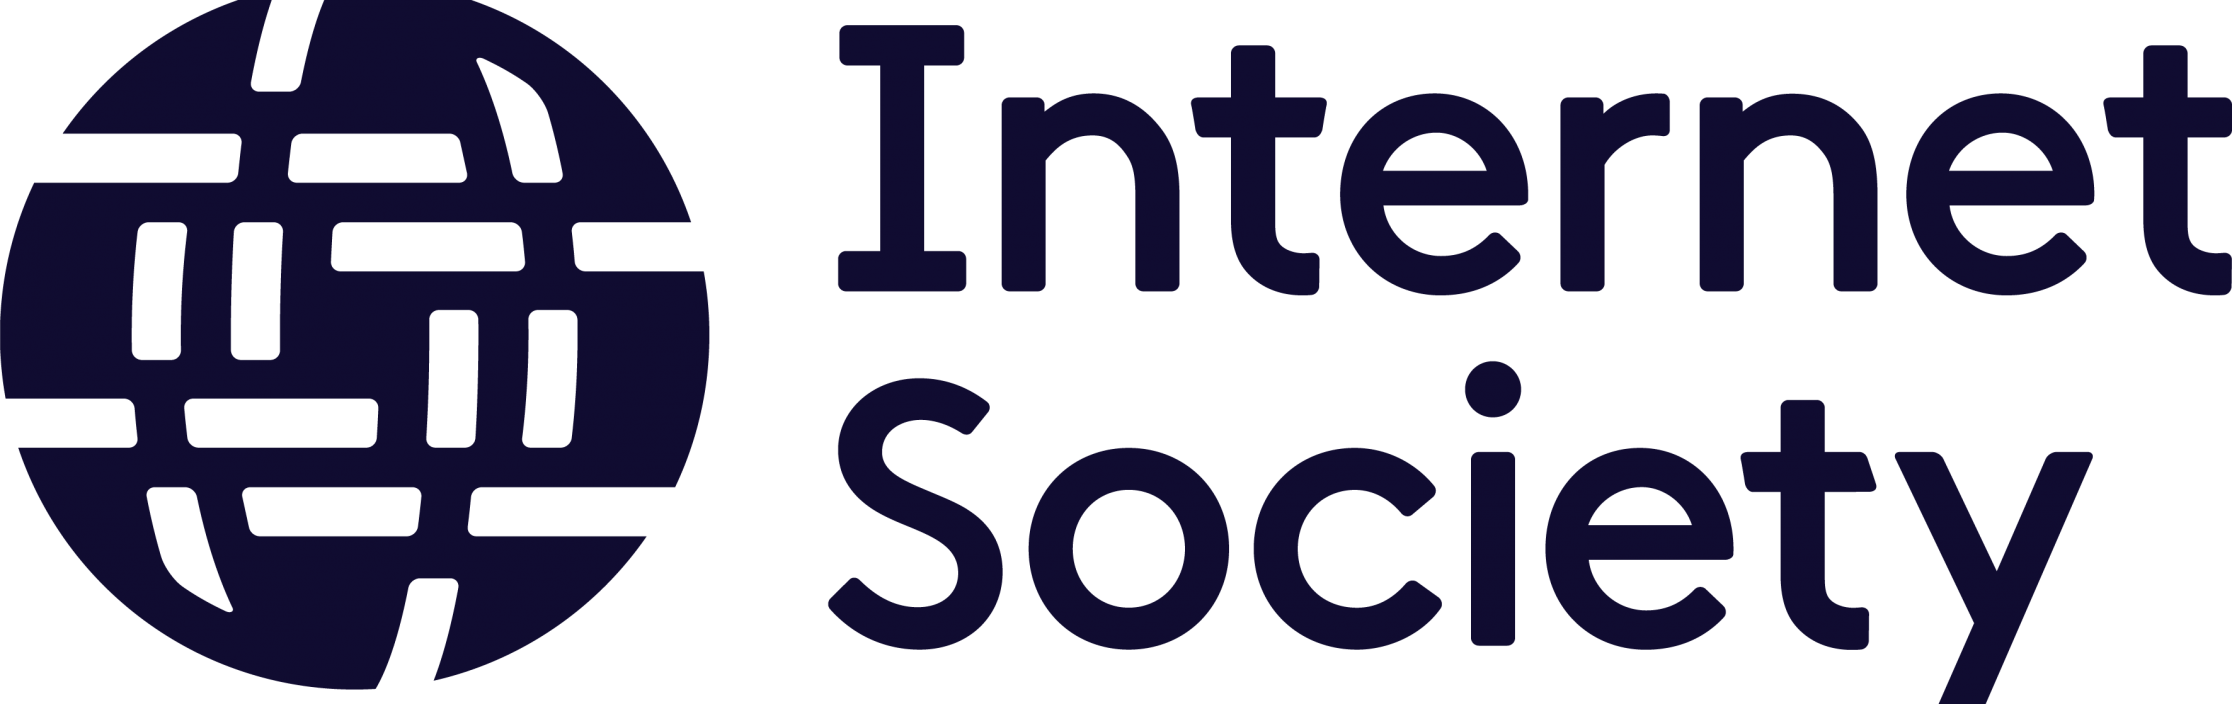 ISOC-logo-Dark